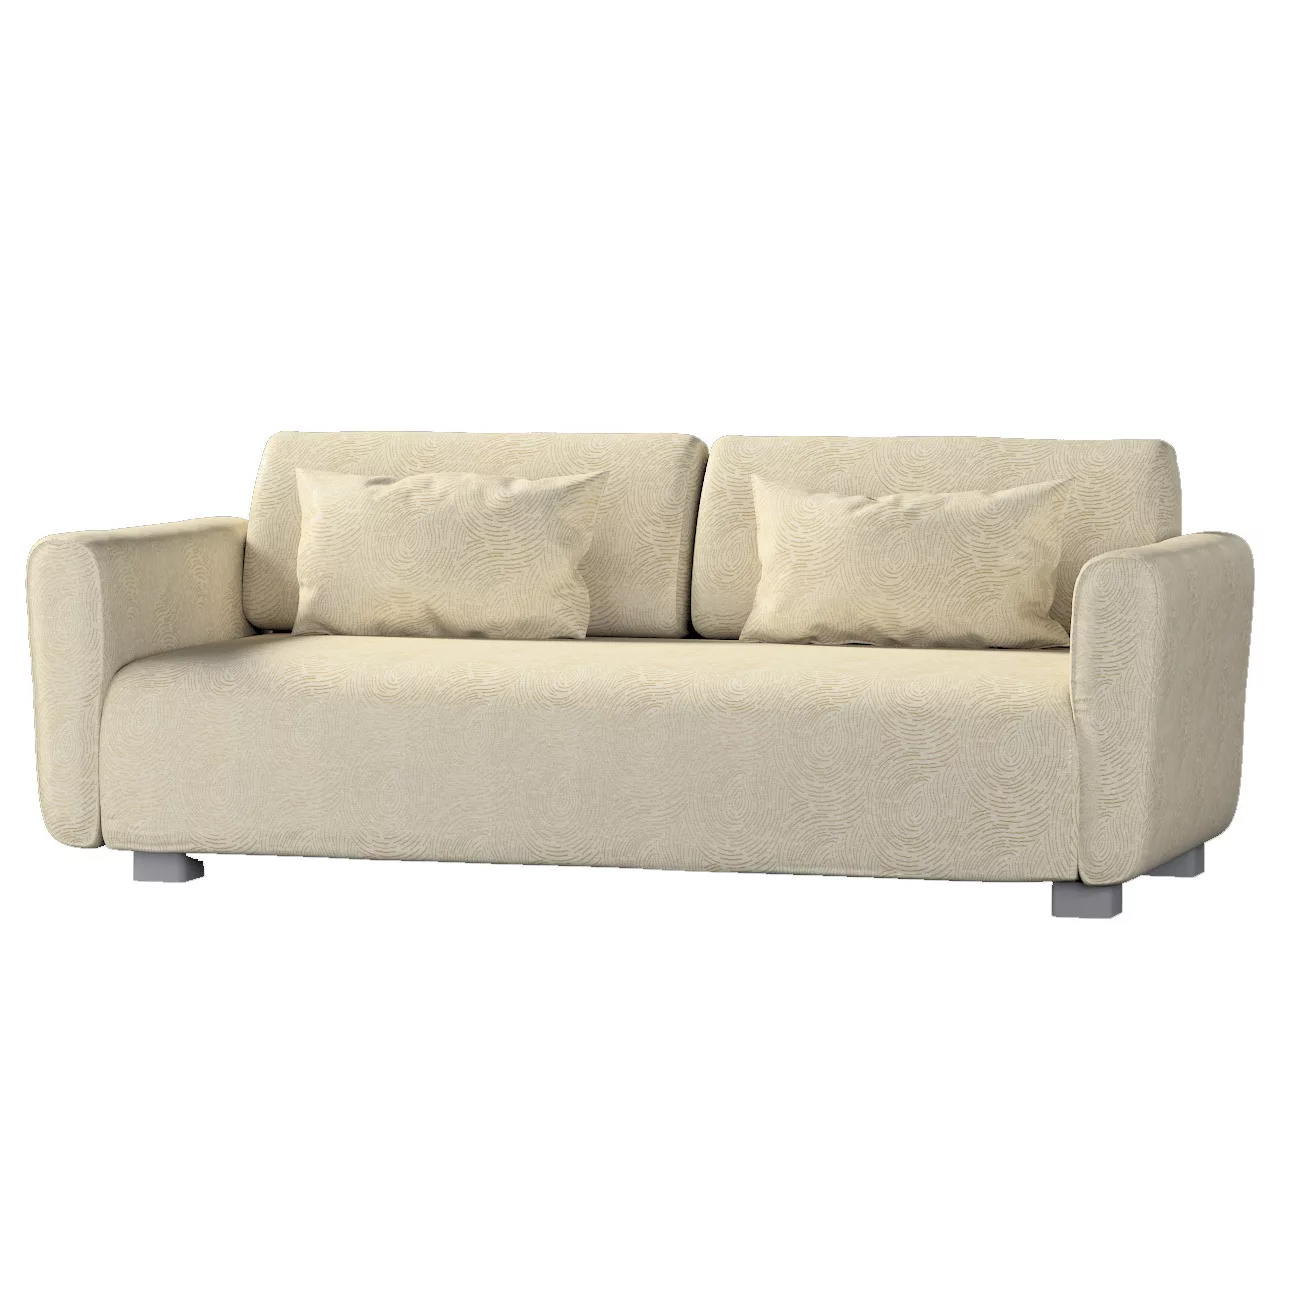 Bezug für Mysinge 2-Sitzer Sofa, beige-golden, Sofabezug Mysinge 2-Sitzer, günstig online kaufen